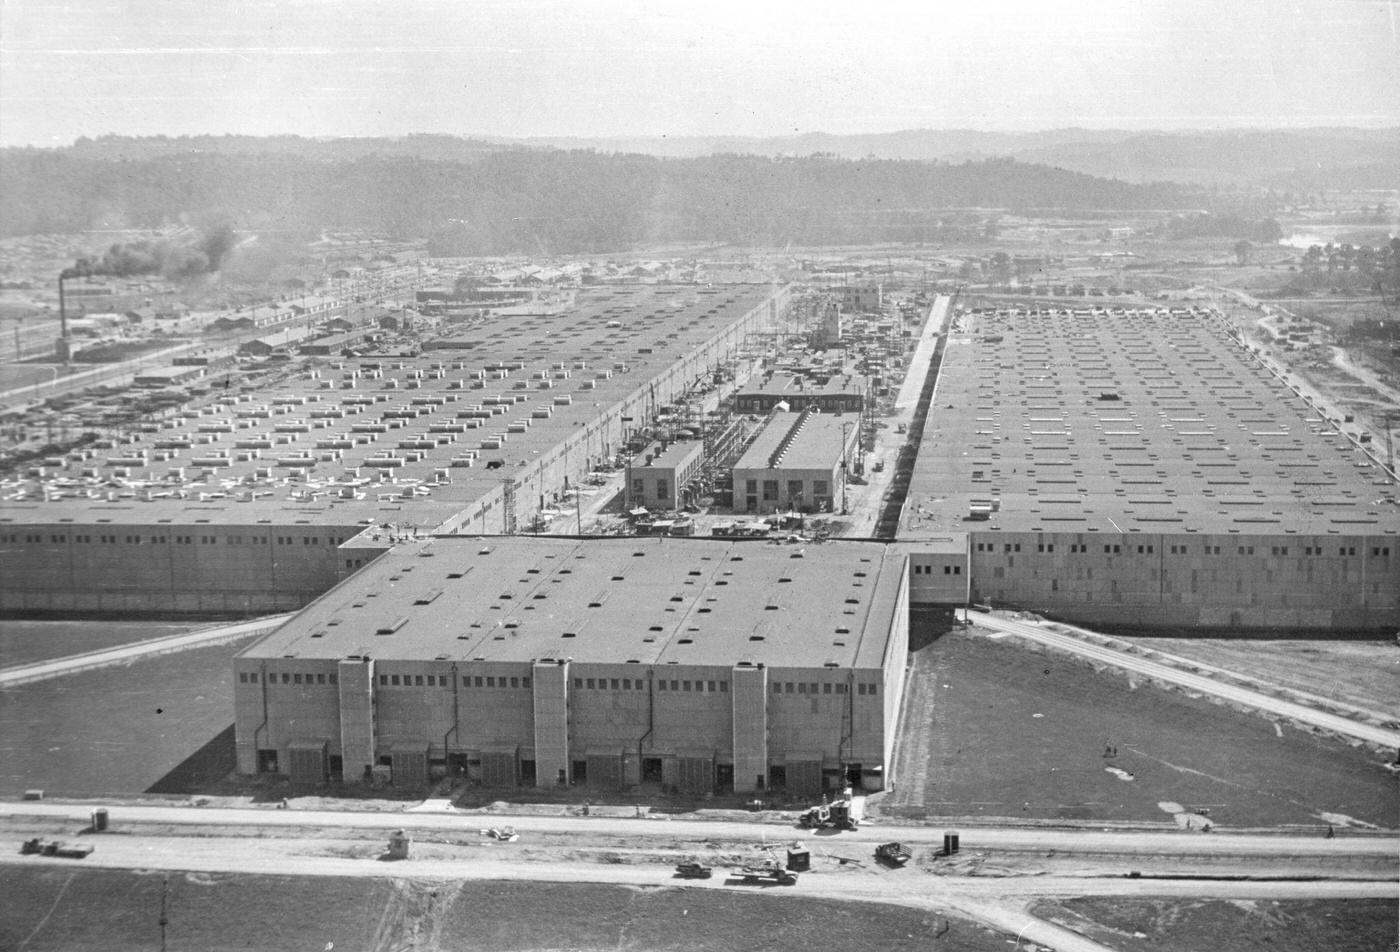 Manhattan Project's K-25 Plant, Oak Ridge, Tennessee, 1945.